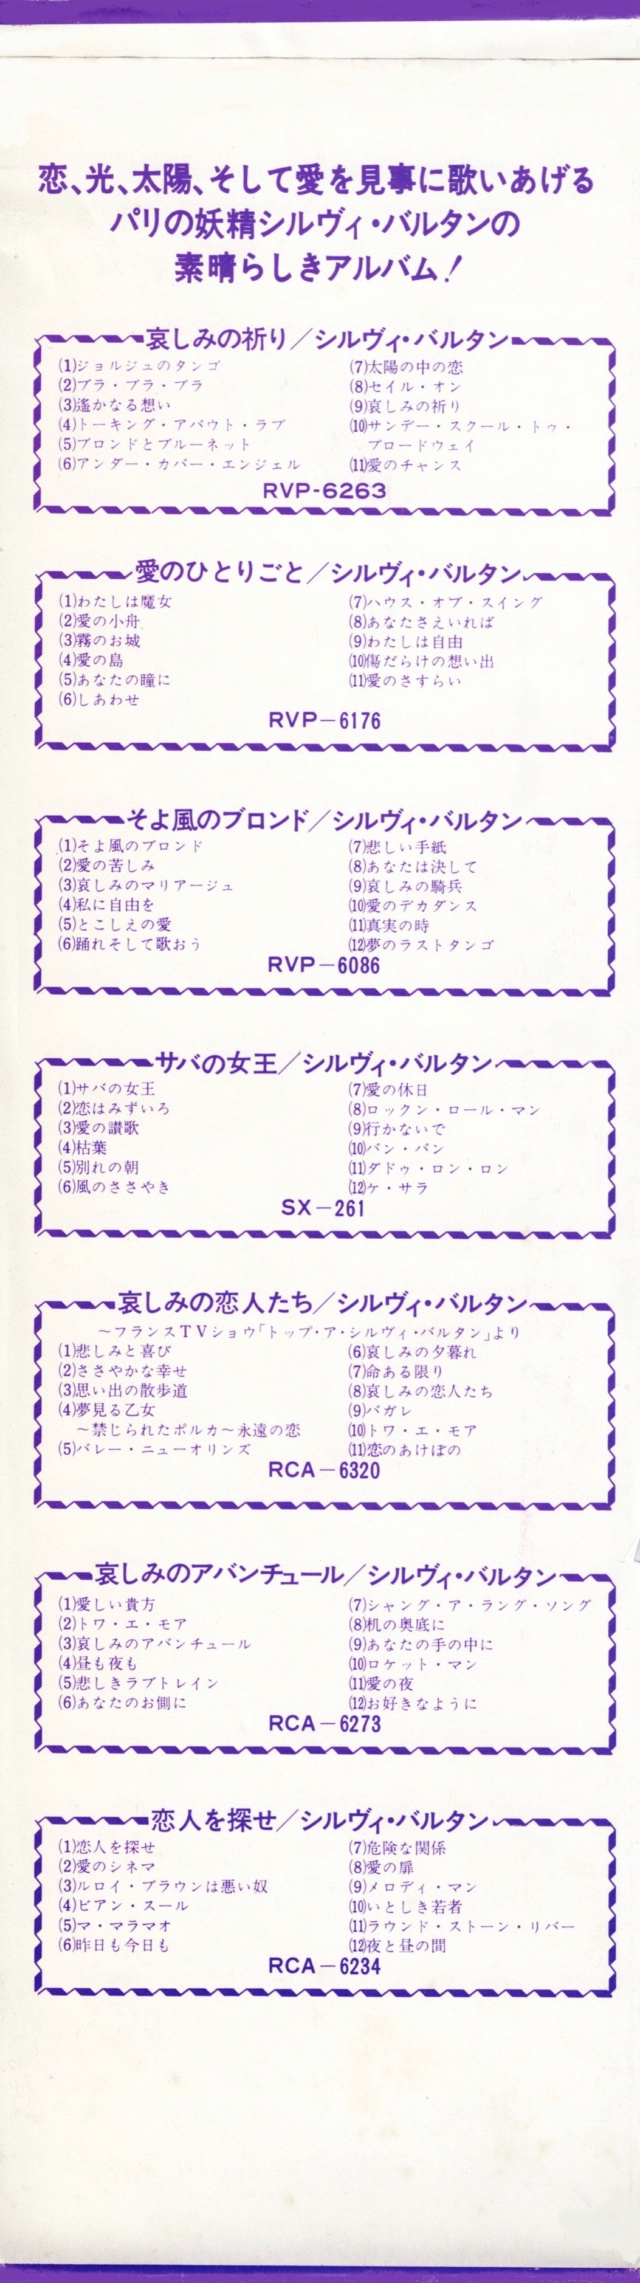 Discographie Japonaise - 4ème partie (33 T COMPILATION) - Page 15 Jpn_rv17